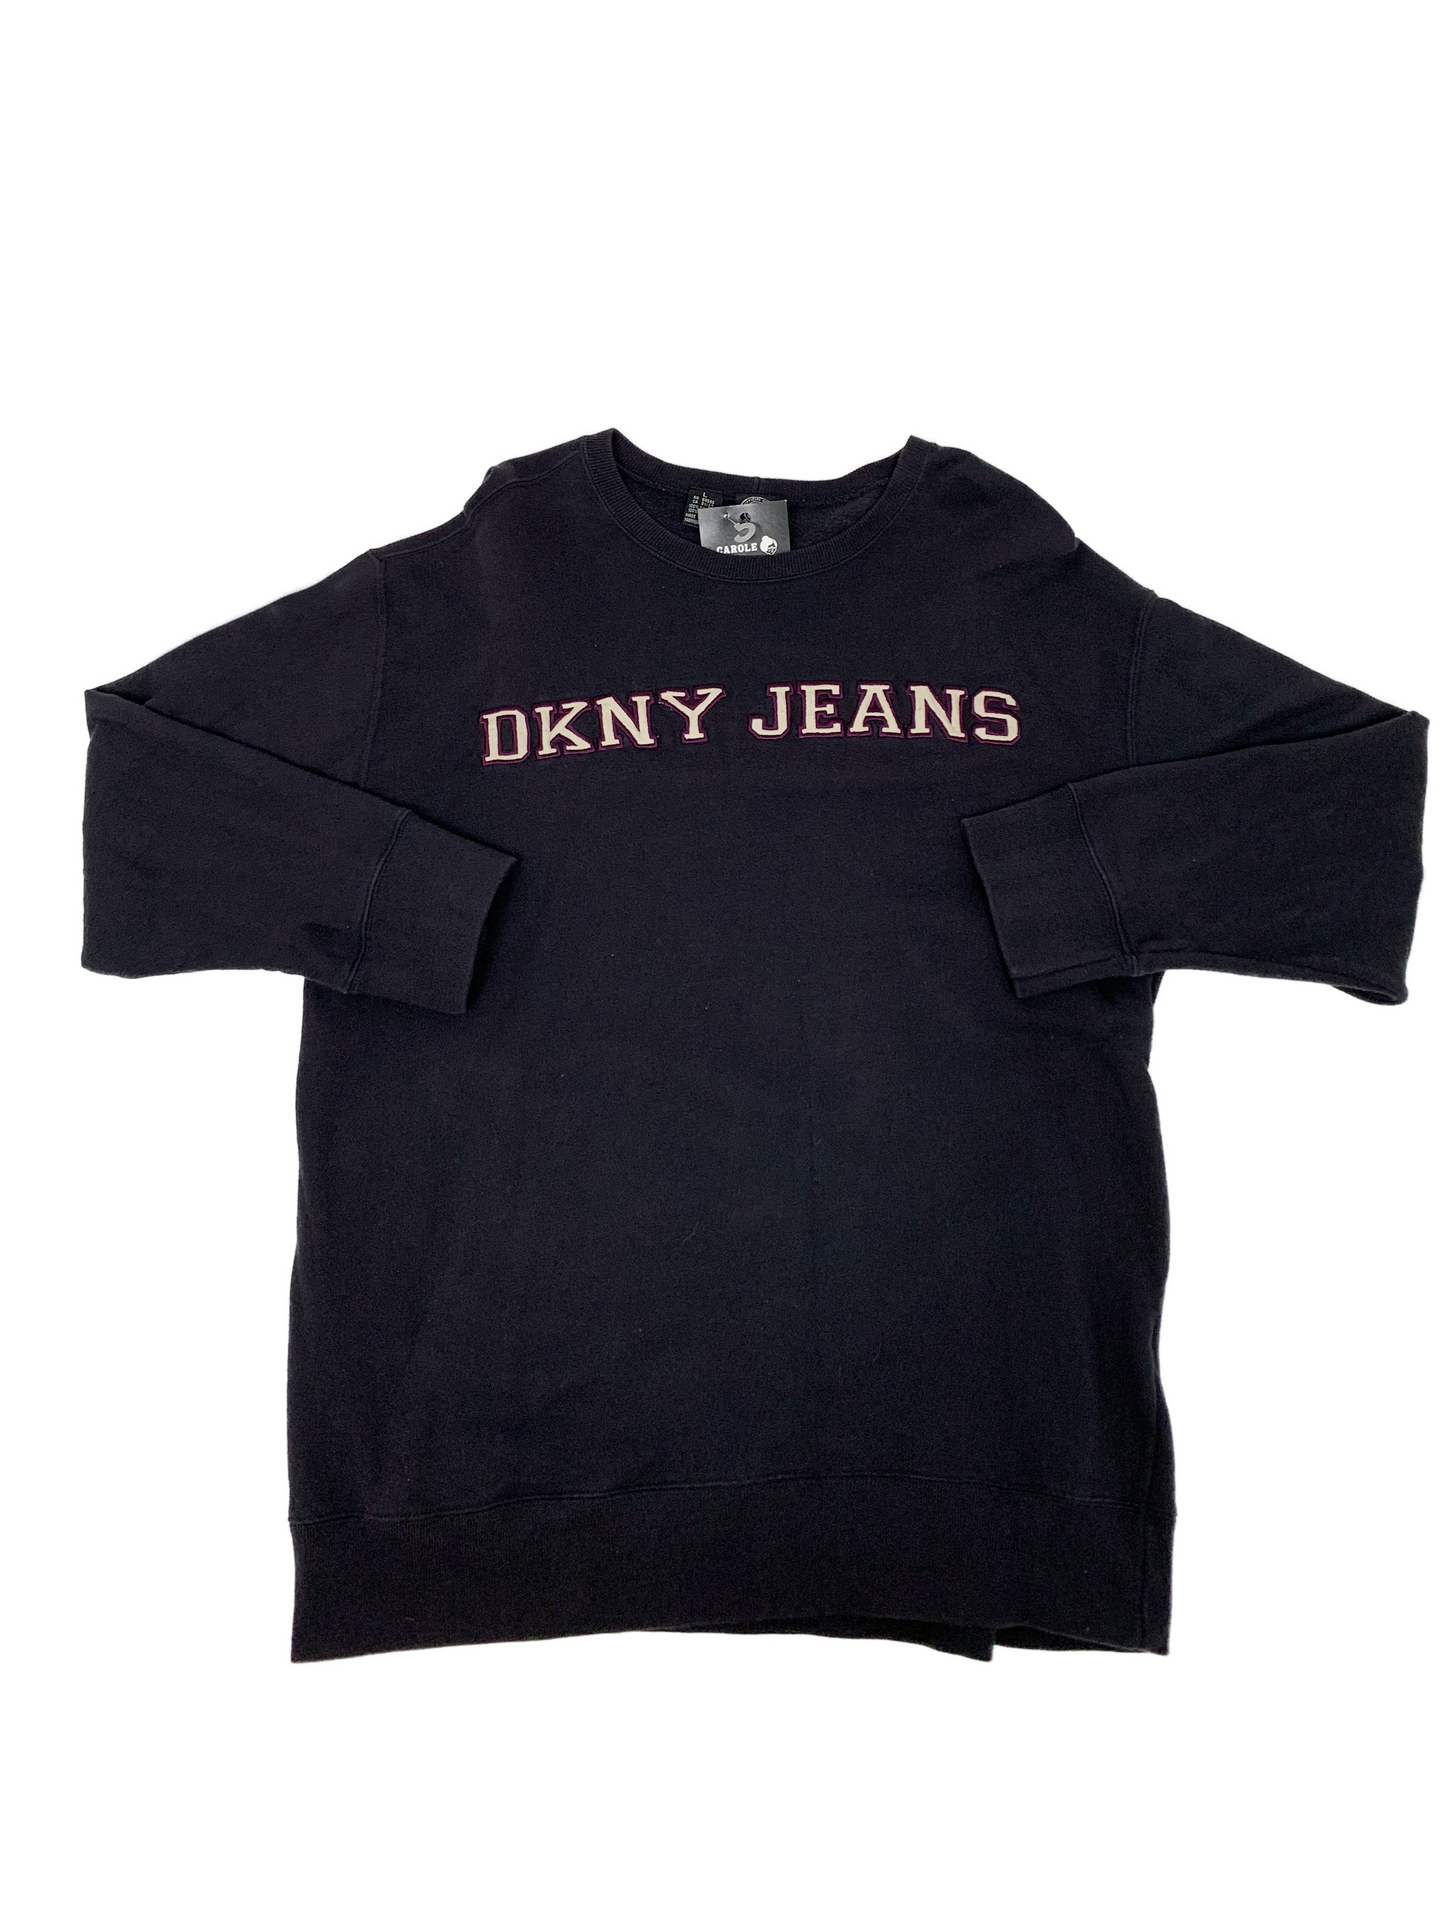 DKNY Jeans Crewneck